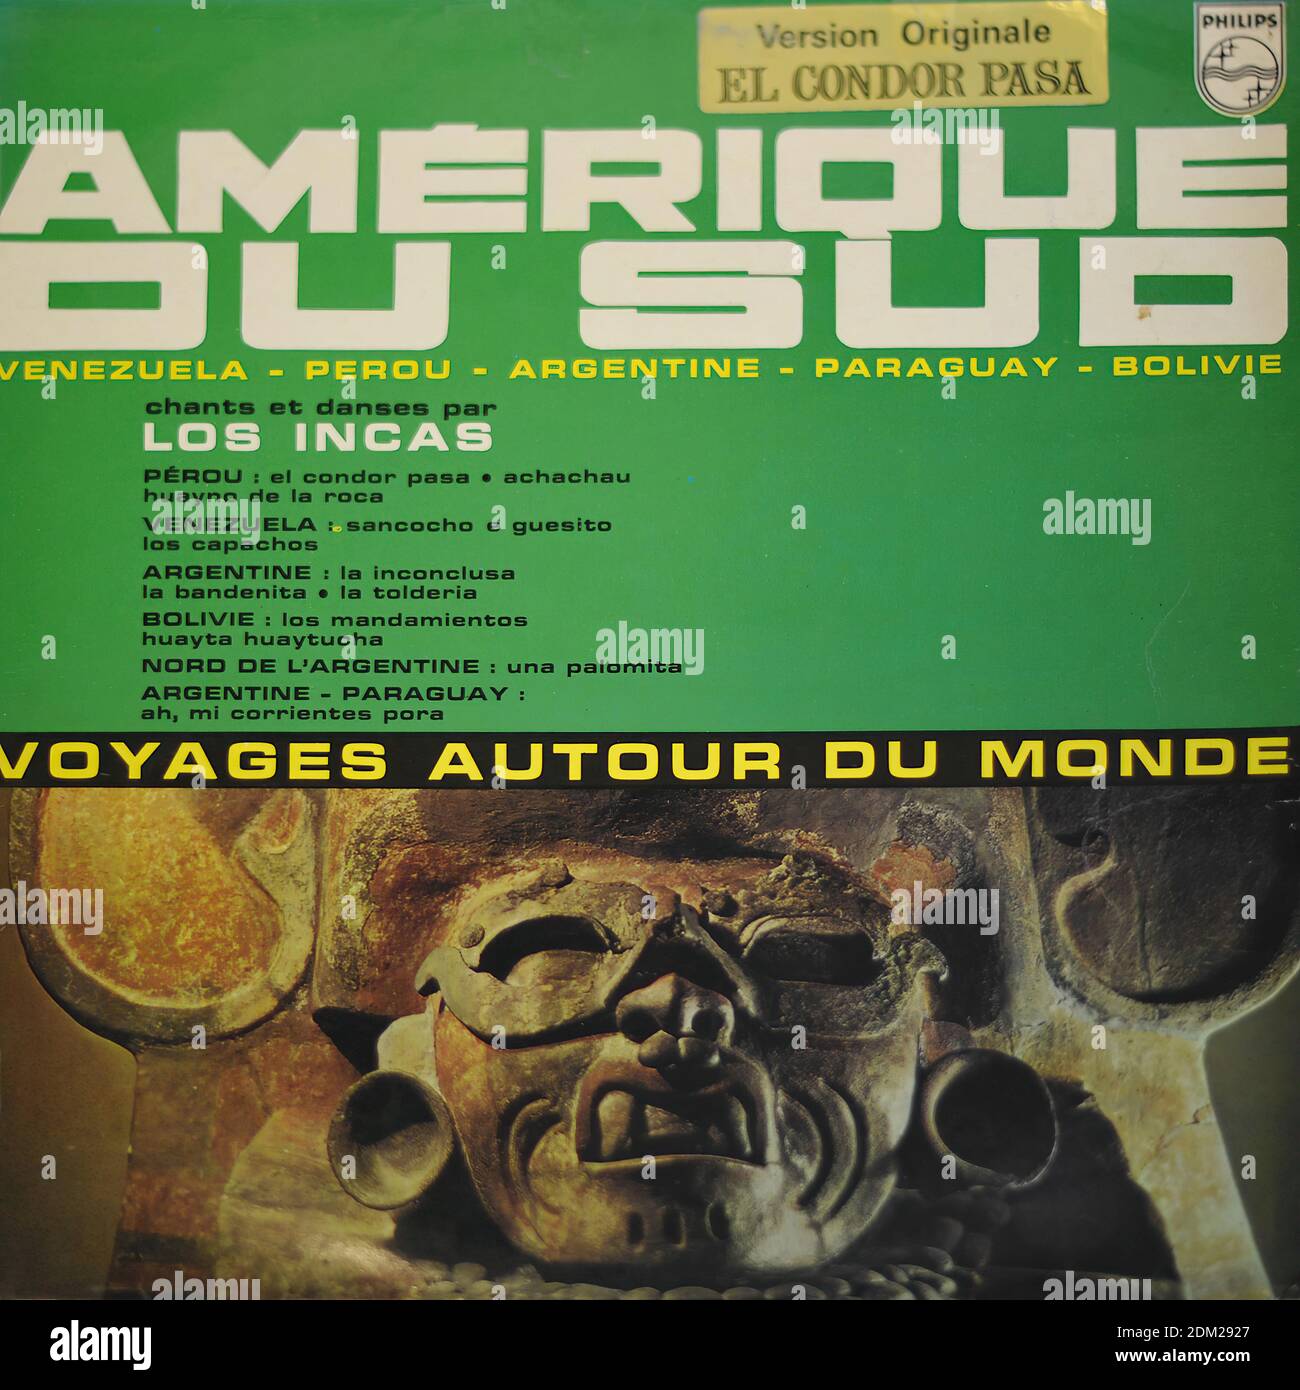 AMÉRIQUE DU SUD LOS INCAS VOYAGES AUTOUR DU MONDE 12 LP - couverture  Vintage Vinyl Record Photo Stock - Alamy